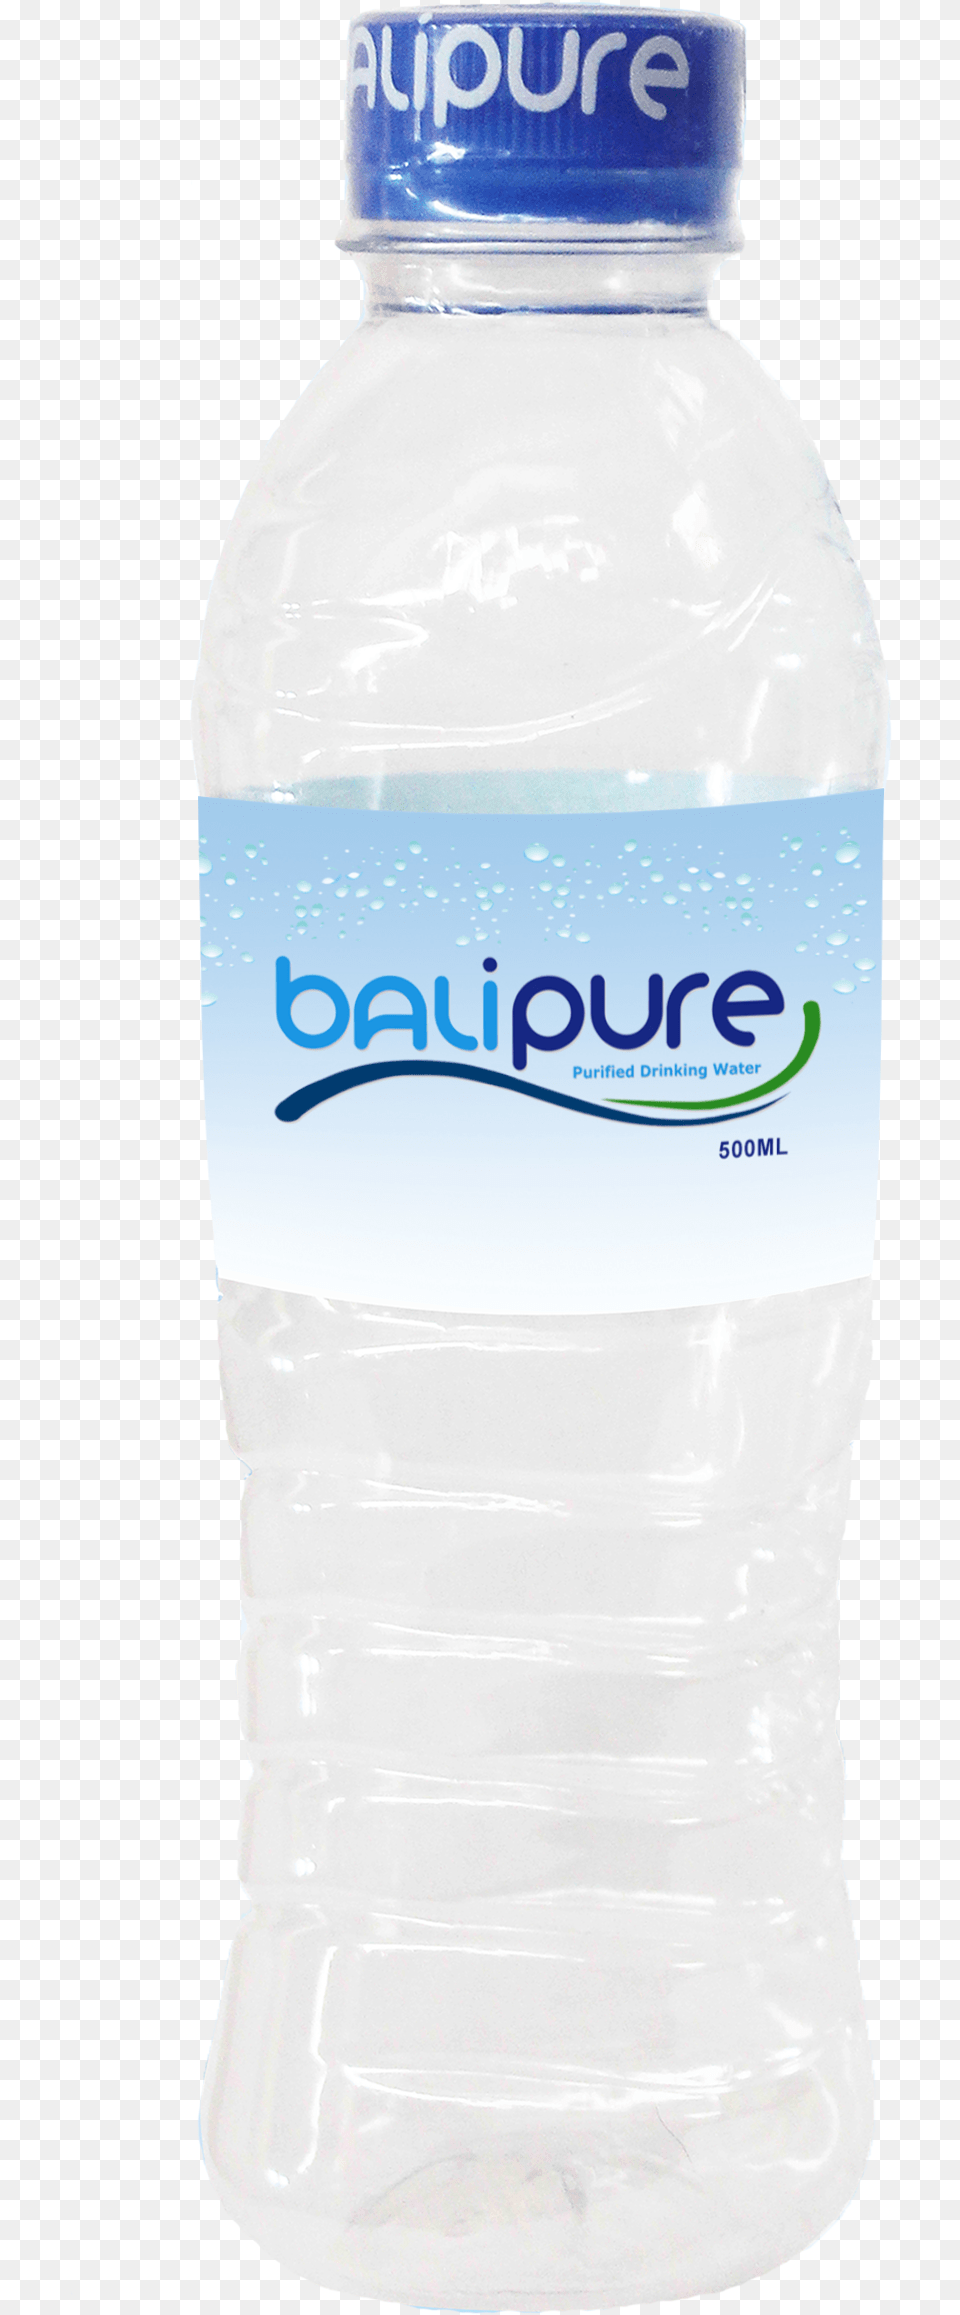 Balipure Bottle Balipure Bottle, Water Bottle, Beverage, Mineral Water, Milk Png Image